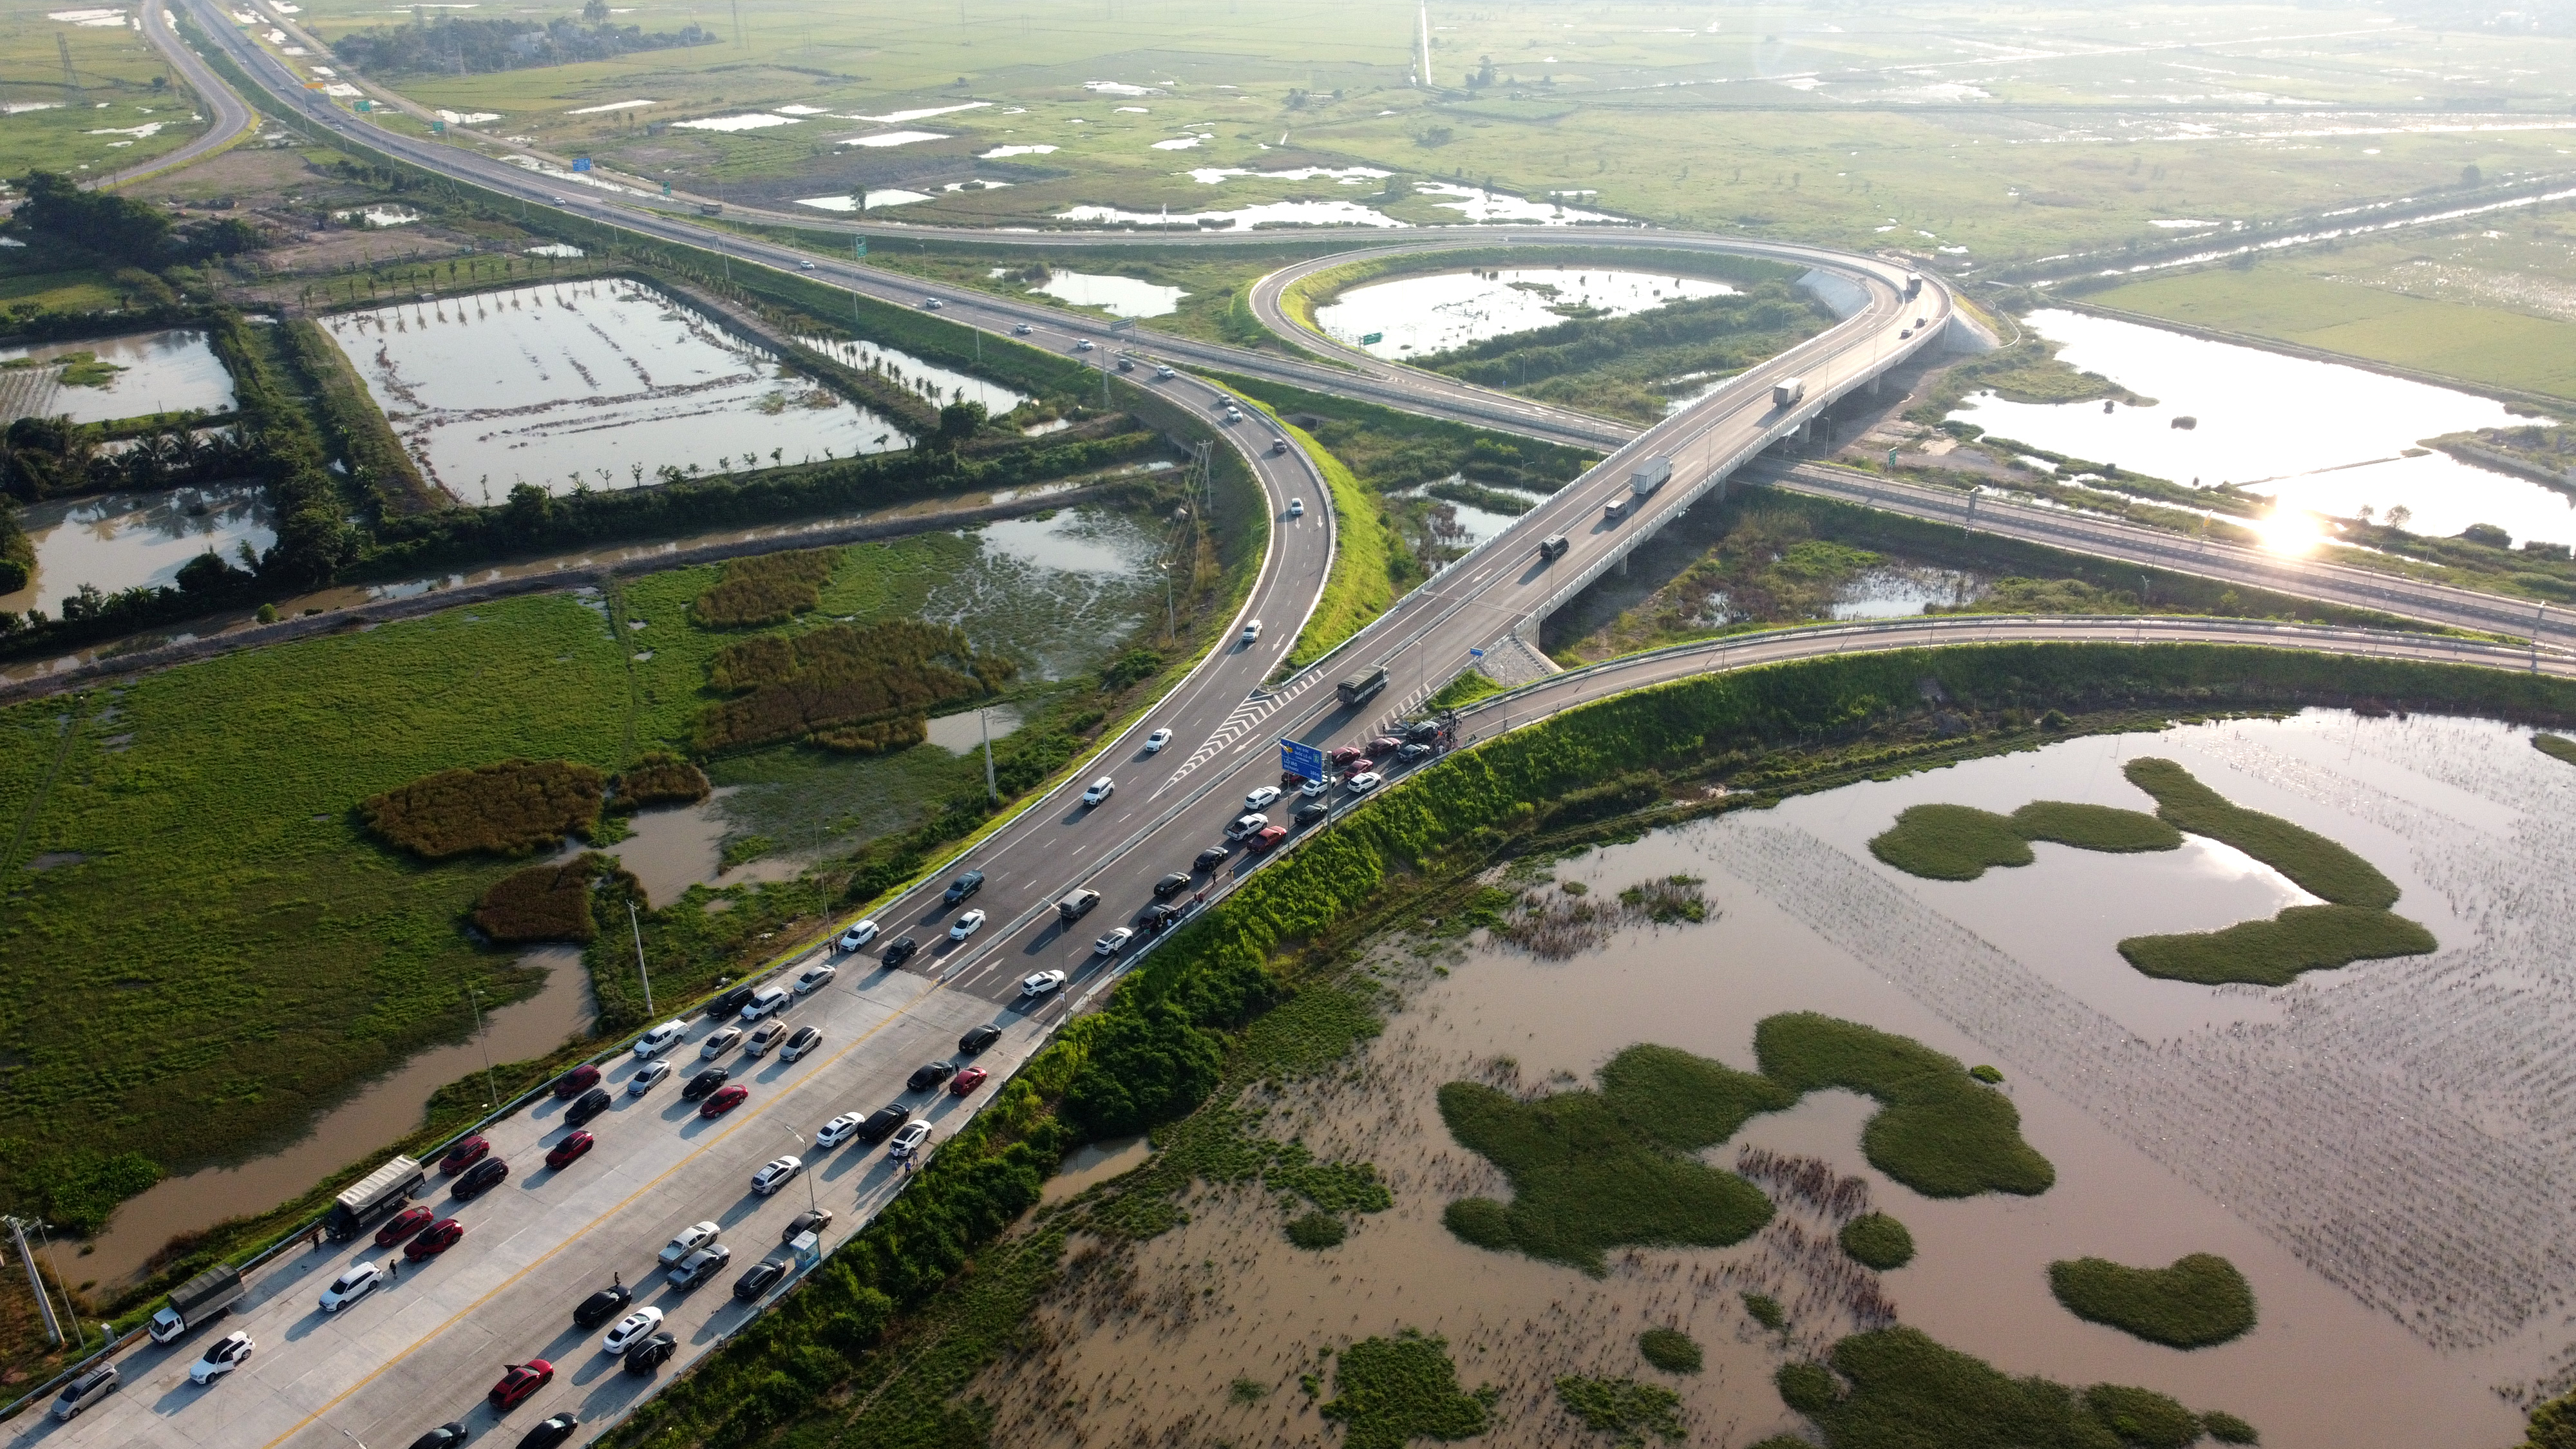 Cao tốc nối Thanh Hóa, Nghệ An chính thức cho xe lưu thông